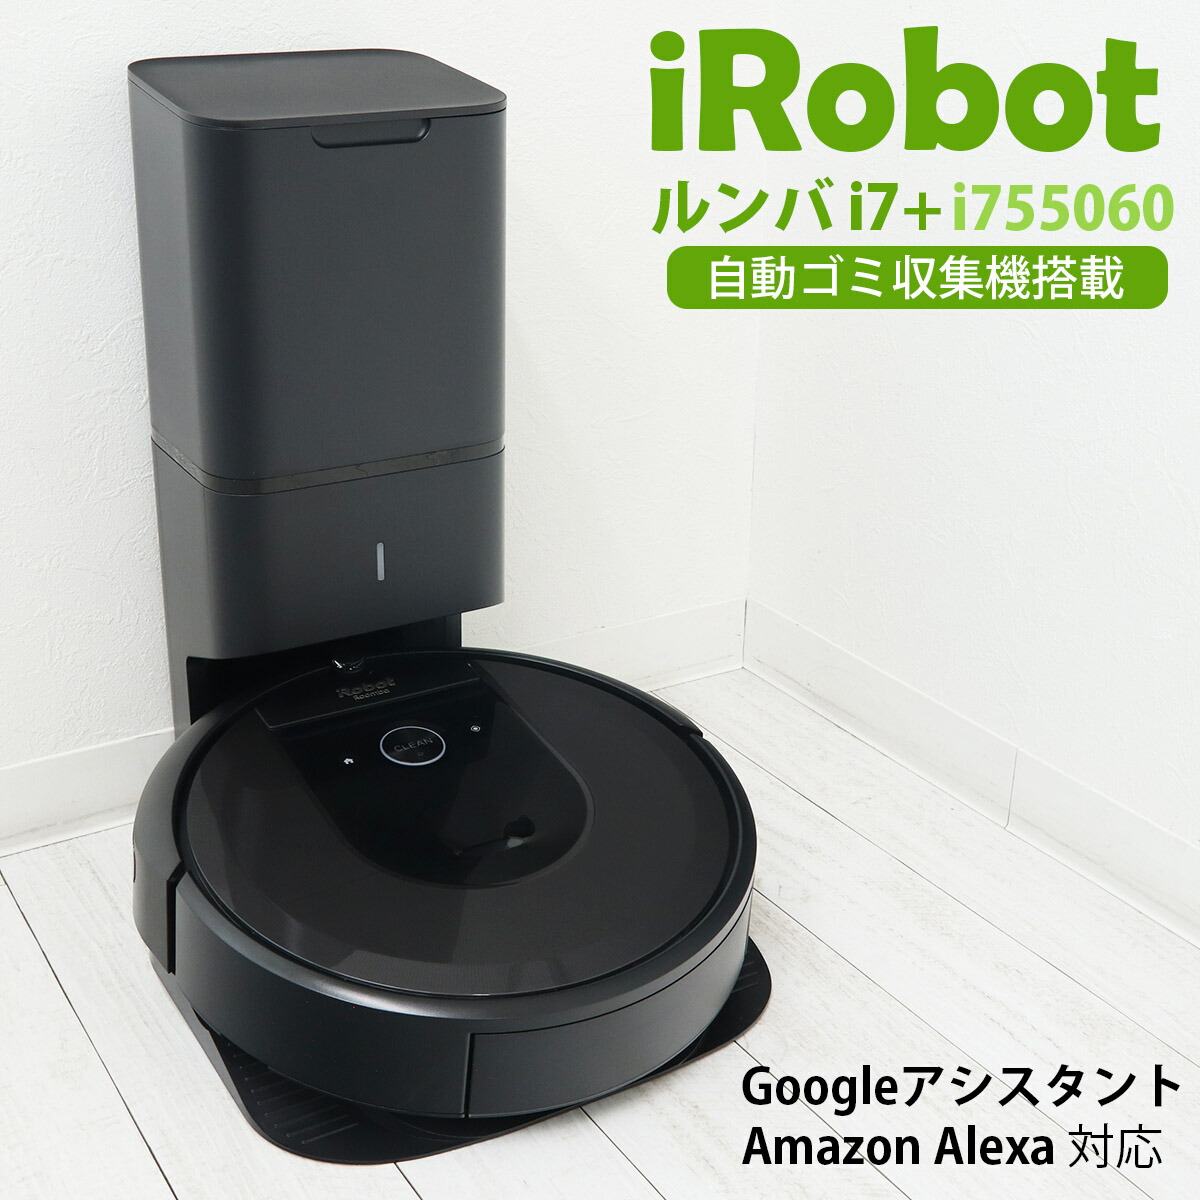 ルンバ i7 プラス i7+ 純正 i755060 iRobot アイロボット ロボット掃除機 wifi対応 スマートスピーカー対応 Alexa対応  お掃除ロボット